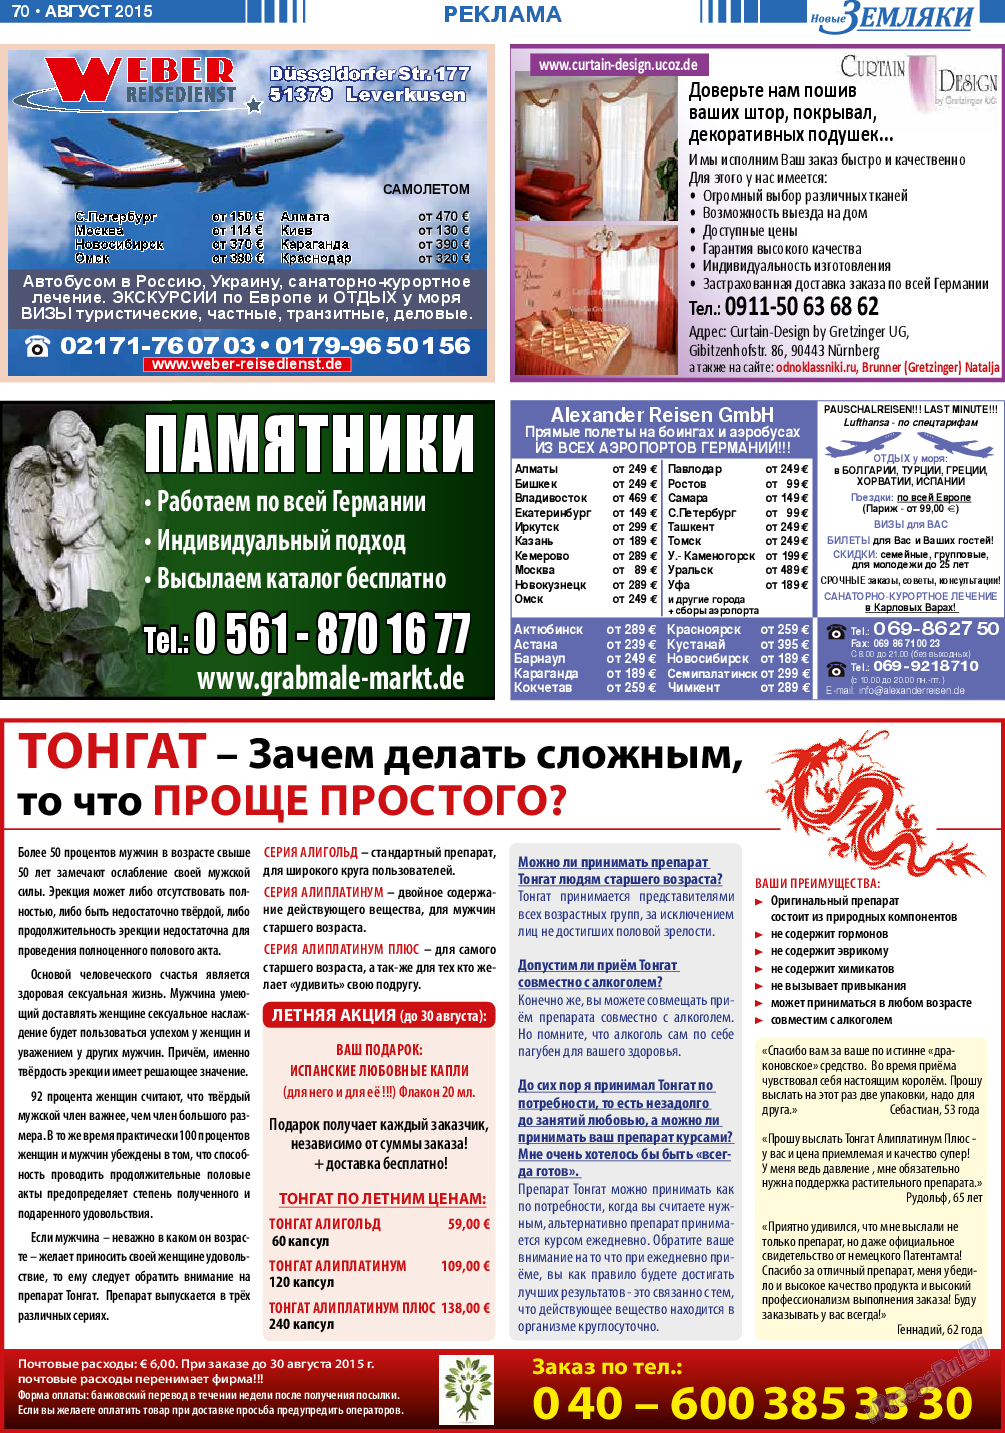 Новые Земляки, газета. 2015 №8 стр.70